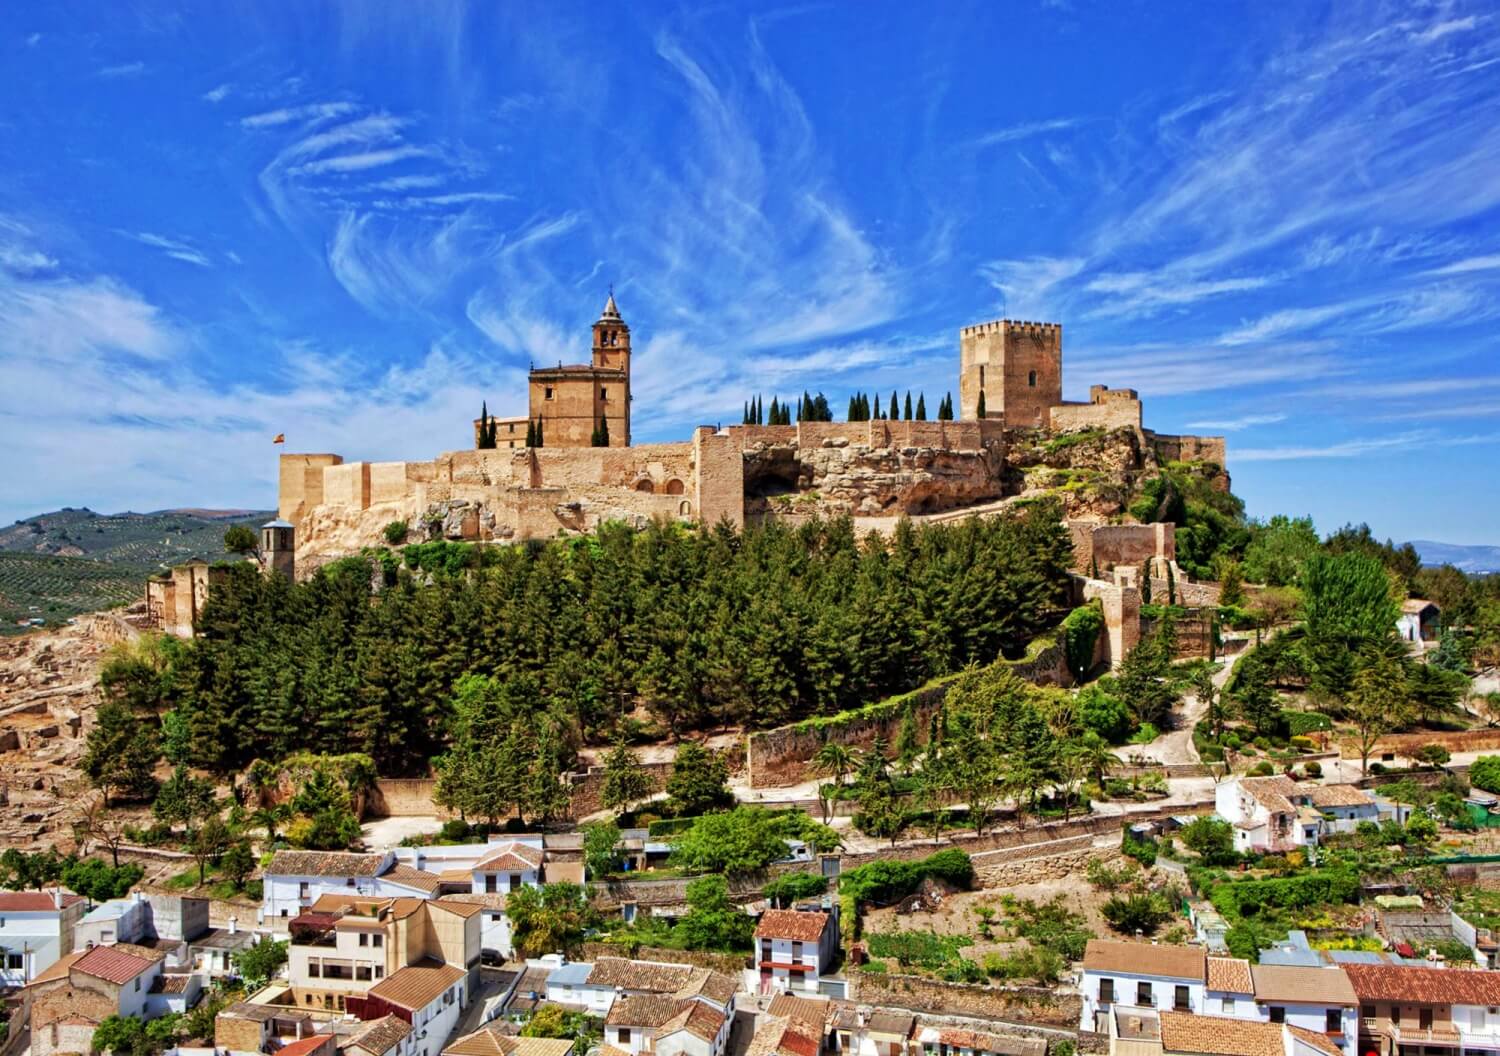 Castle in Alcala la Real